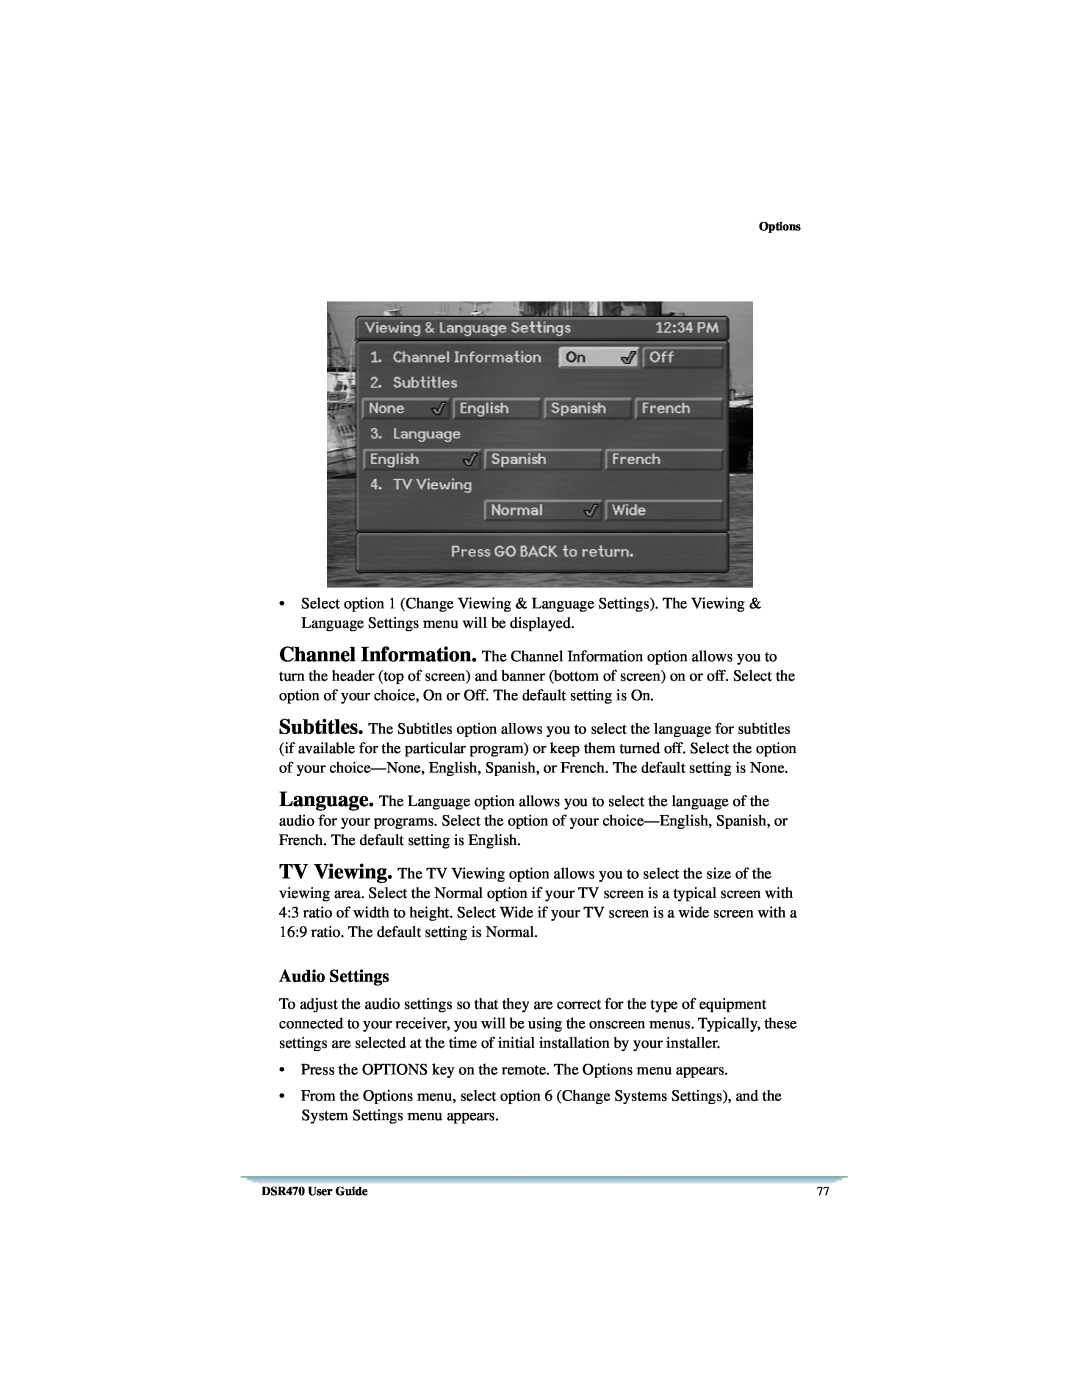 Univex manual Audio Settings, Options, DSR470 User Guide 